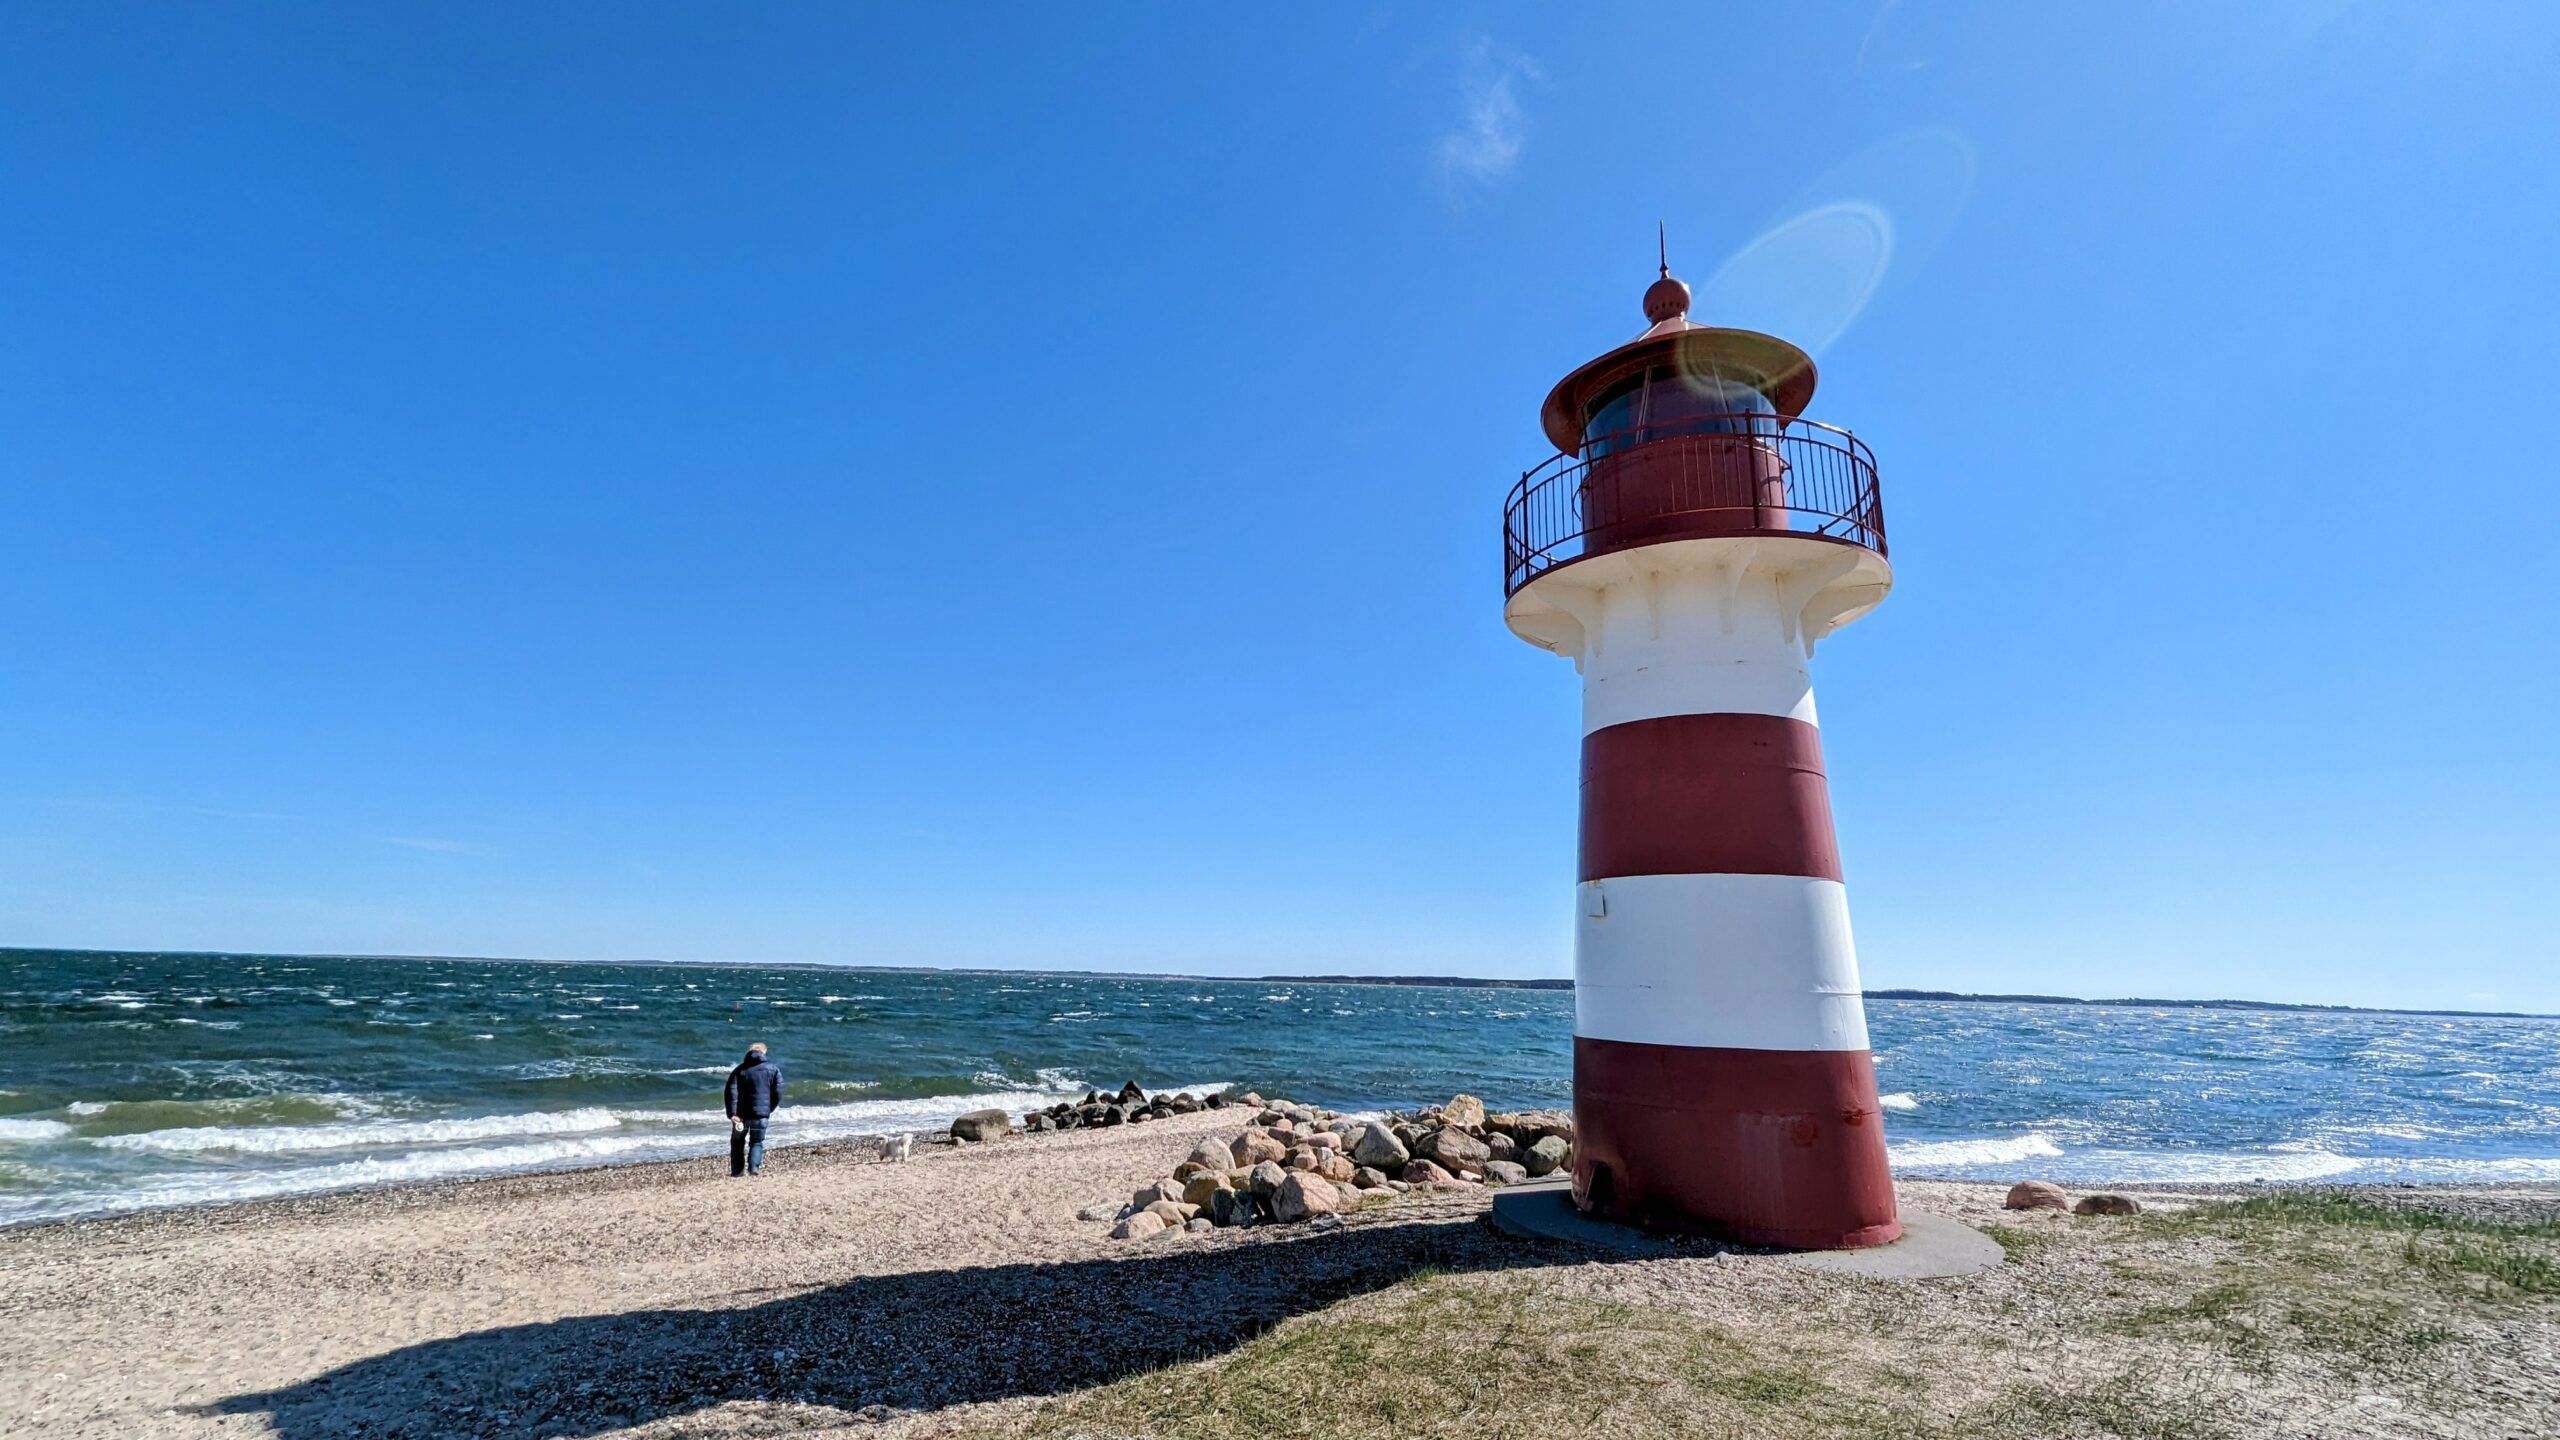 Ein Leuchtturm am Strand mit einer Person, die daneben steht.